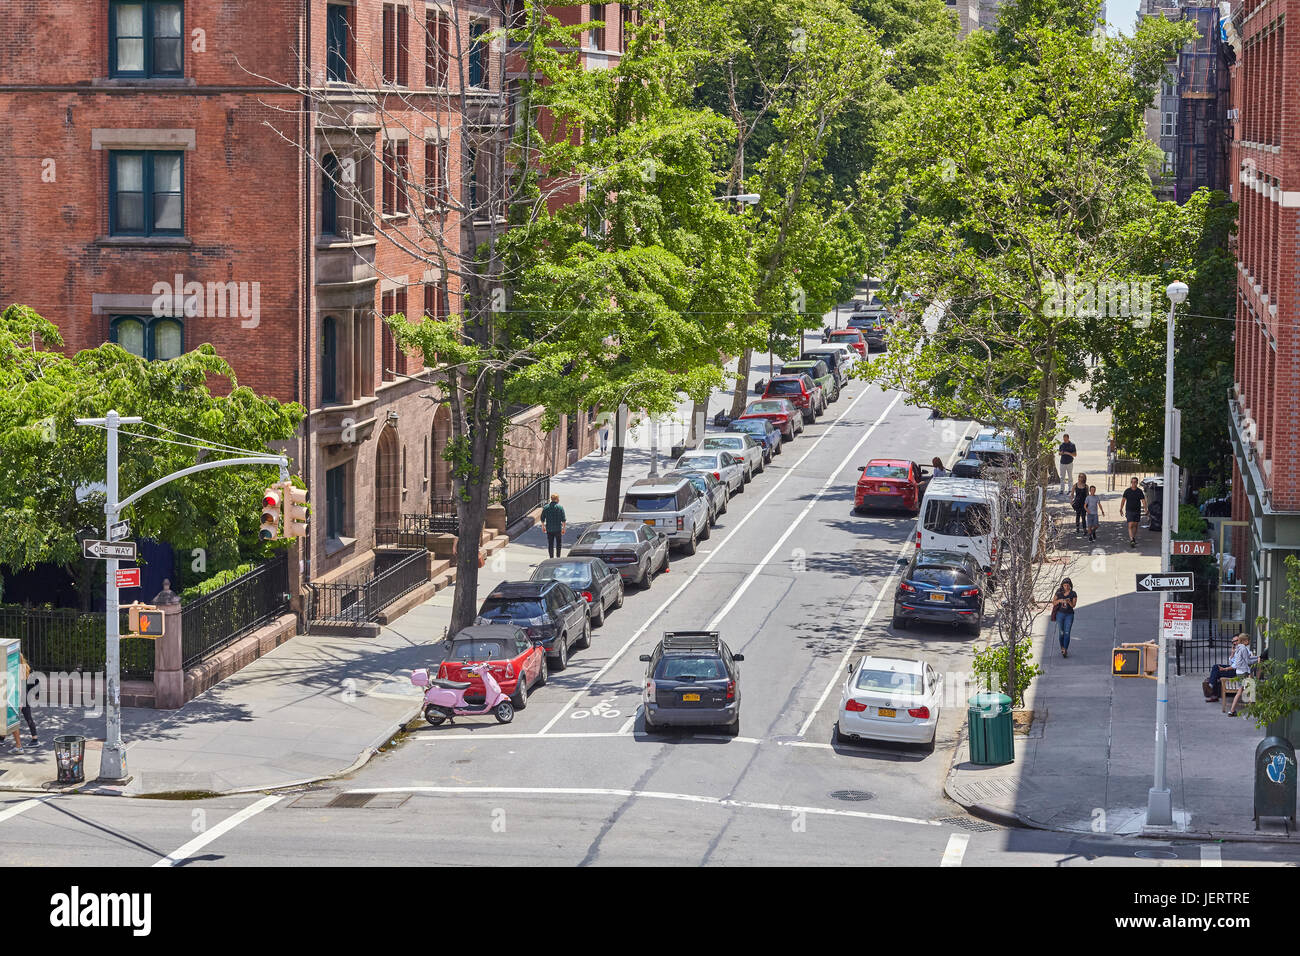 New York, Stati Uniti d'America - 02 Giugno 2017: strada tranquilla nel quartiere di Chelsea Historic District, un elegante quartiere residenziale della città. Foto Stock